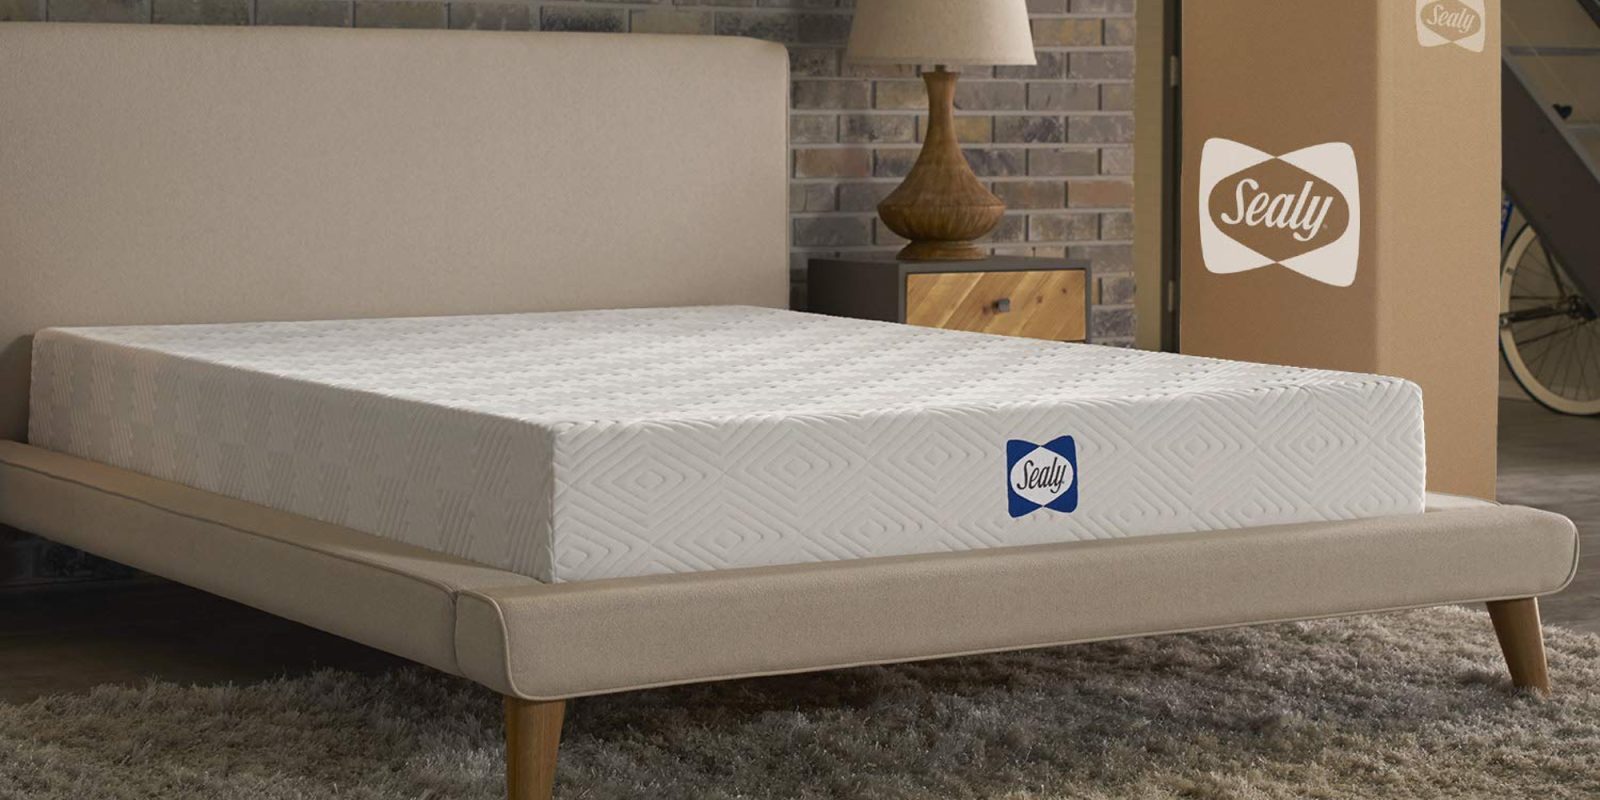 sealy 8-inch memory foam king mattress